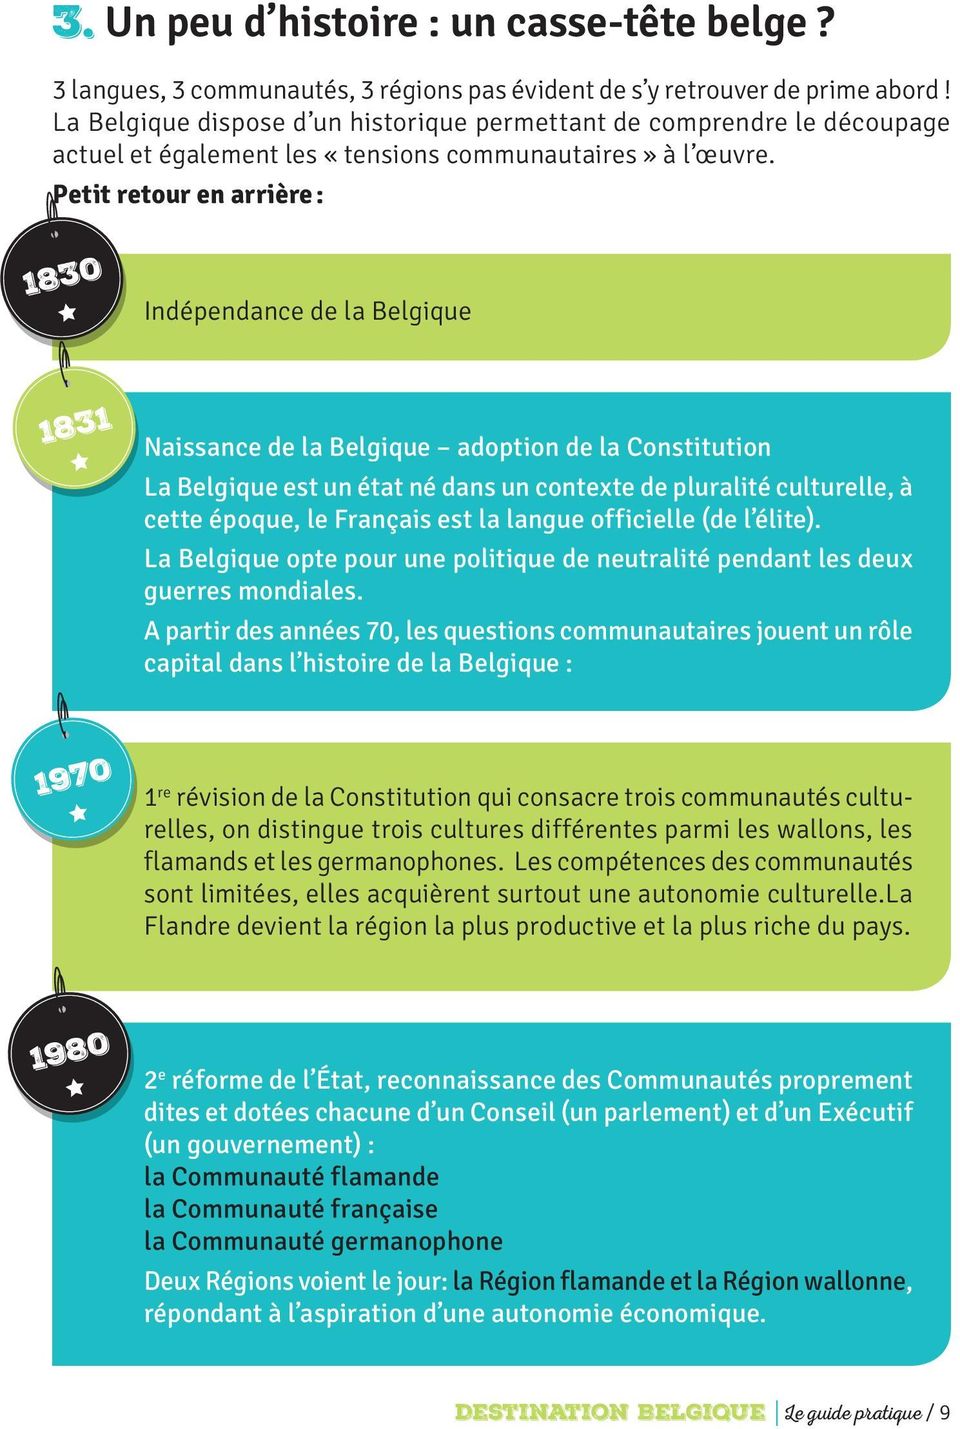 Petit retour en arrière : 1830 Indépendance de la Belgique 1831 Naissance de la Belgique adoption de la Constitution La Belgique est un état né dans un contexte de pluralité culturelle, à cette